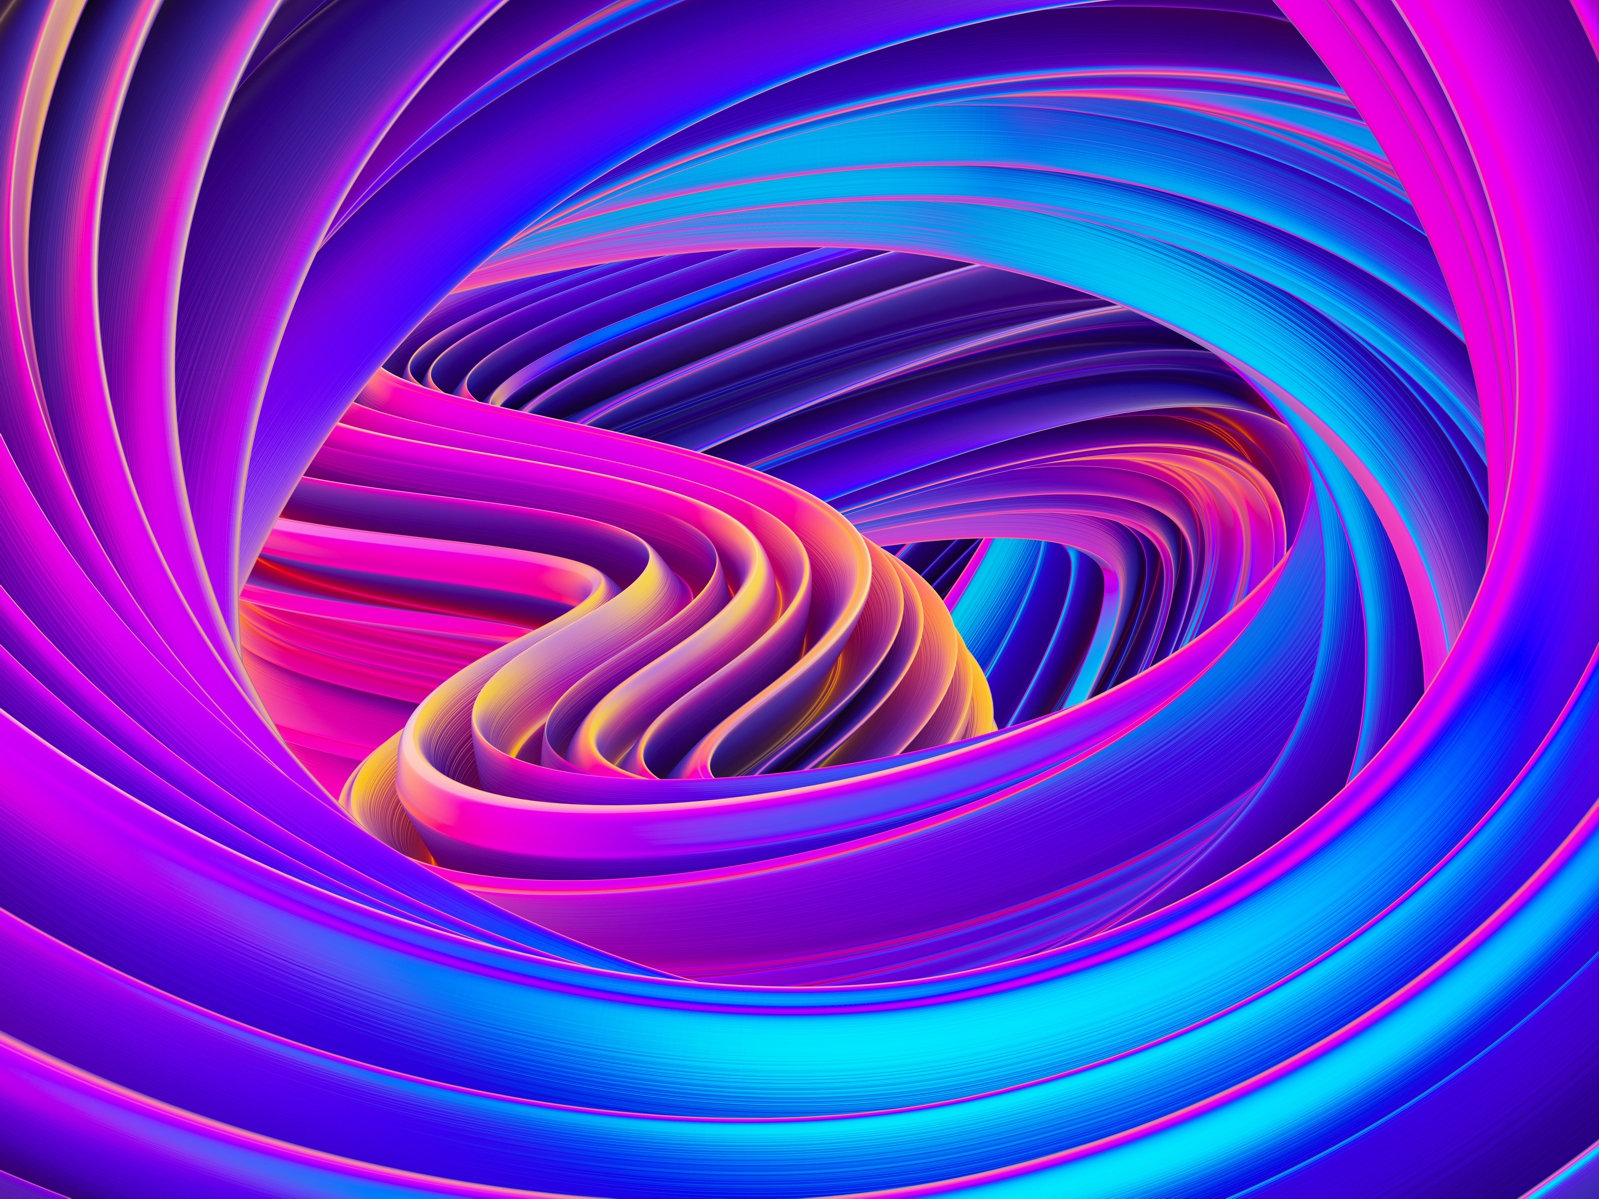 Vlies Tapete Fototapete 3D Effekt Muster lila türkis blau Wirbel